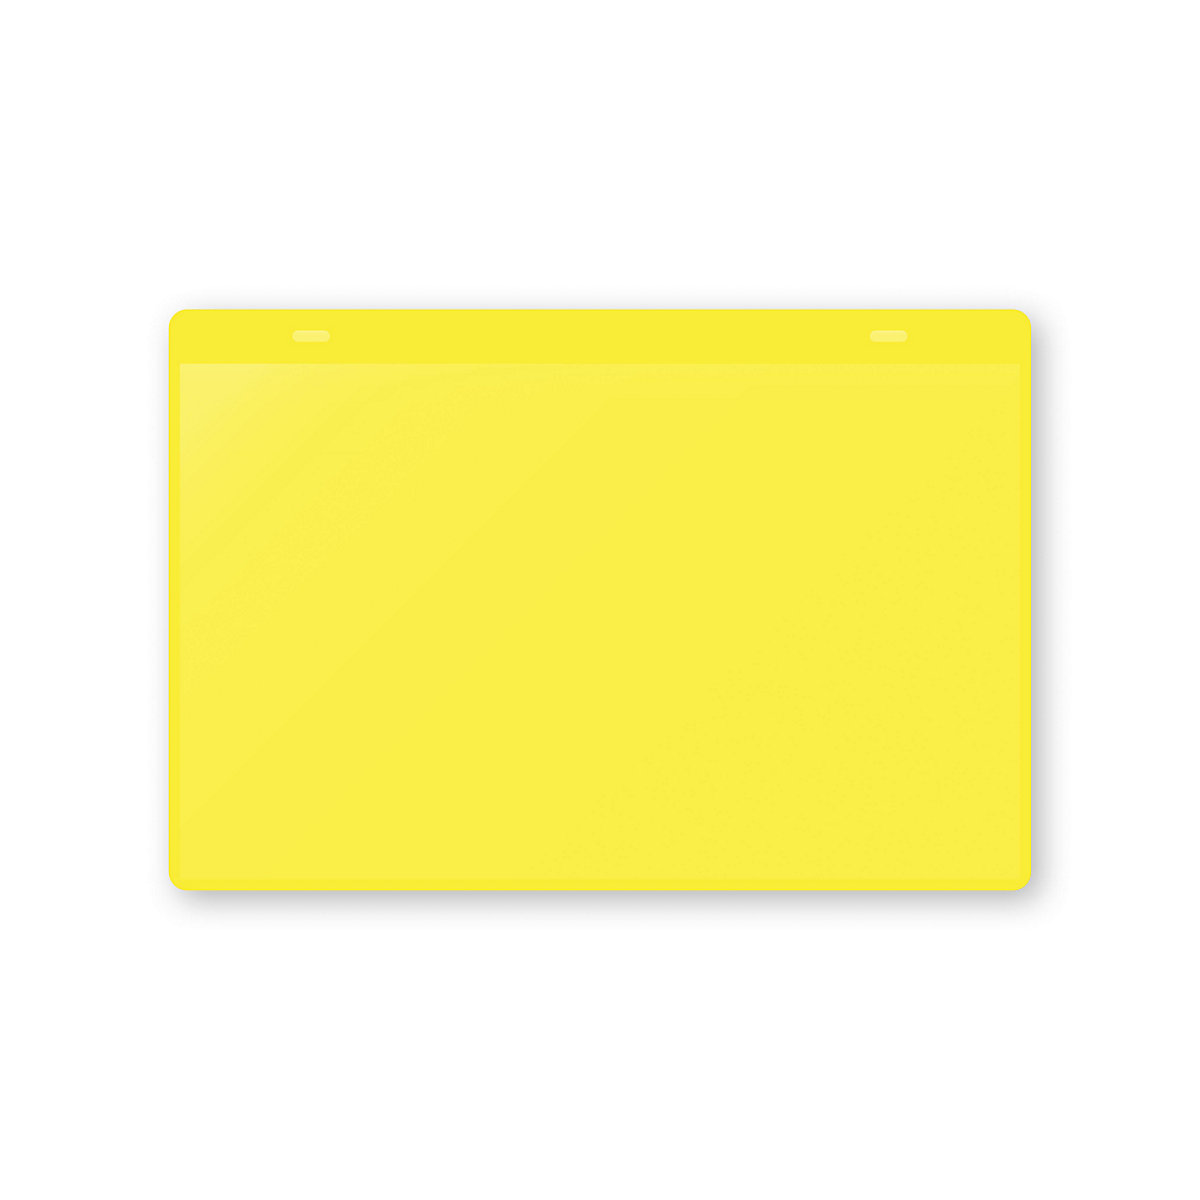 Öntapadó dokumentumtartó tasakok, DIN A5, fekvő, cs. e. 10 db, sárga